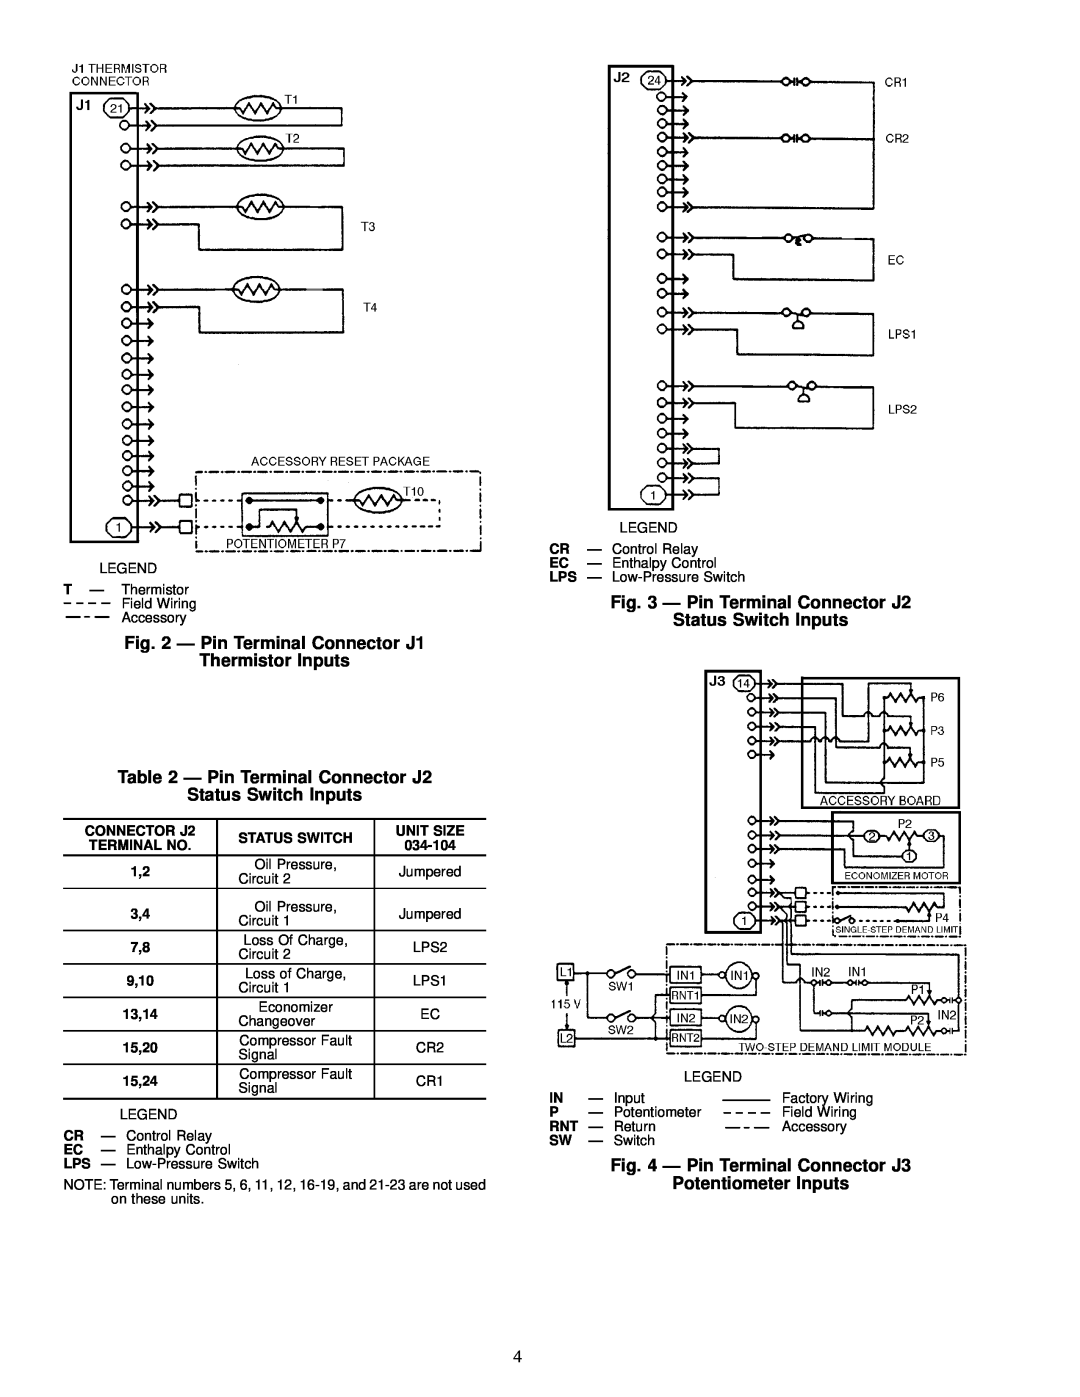 Carrier 50FK, JK034-074 Ð Pin Terminal Connector J2, Status Switch Inputs, Ð Pin Terminal Connector J1 Thermistor Inputs 